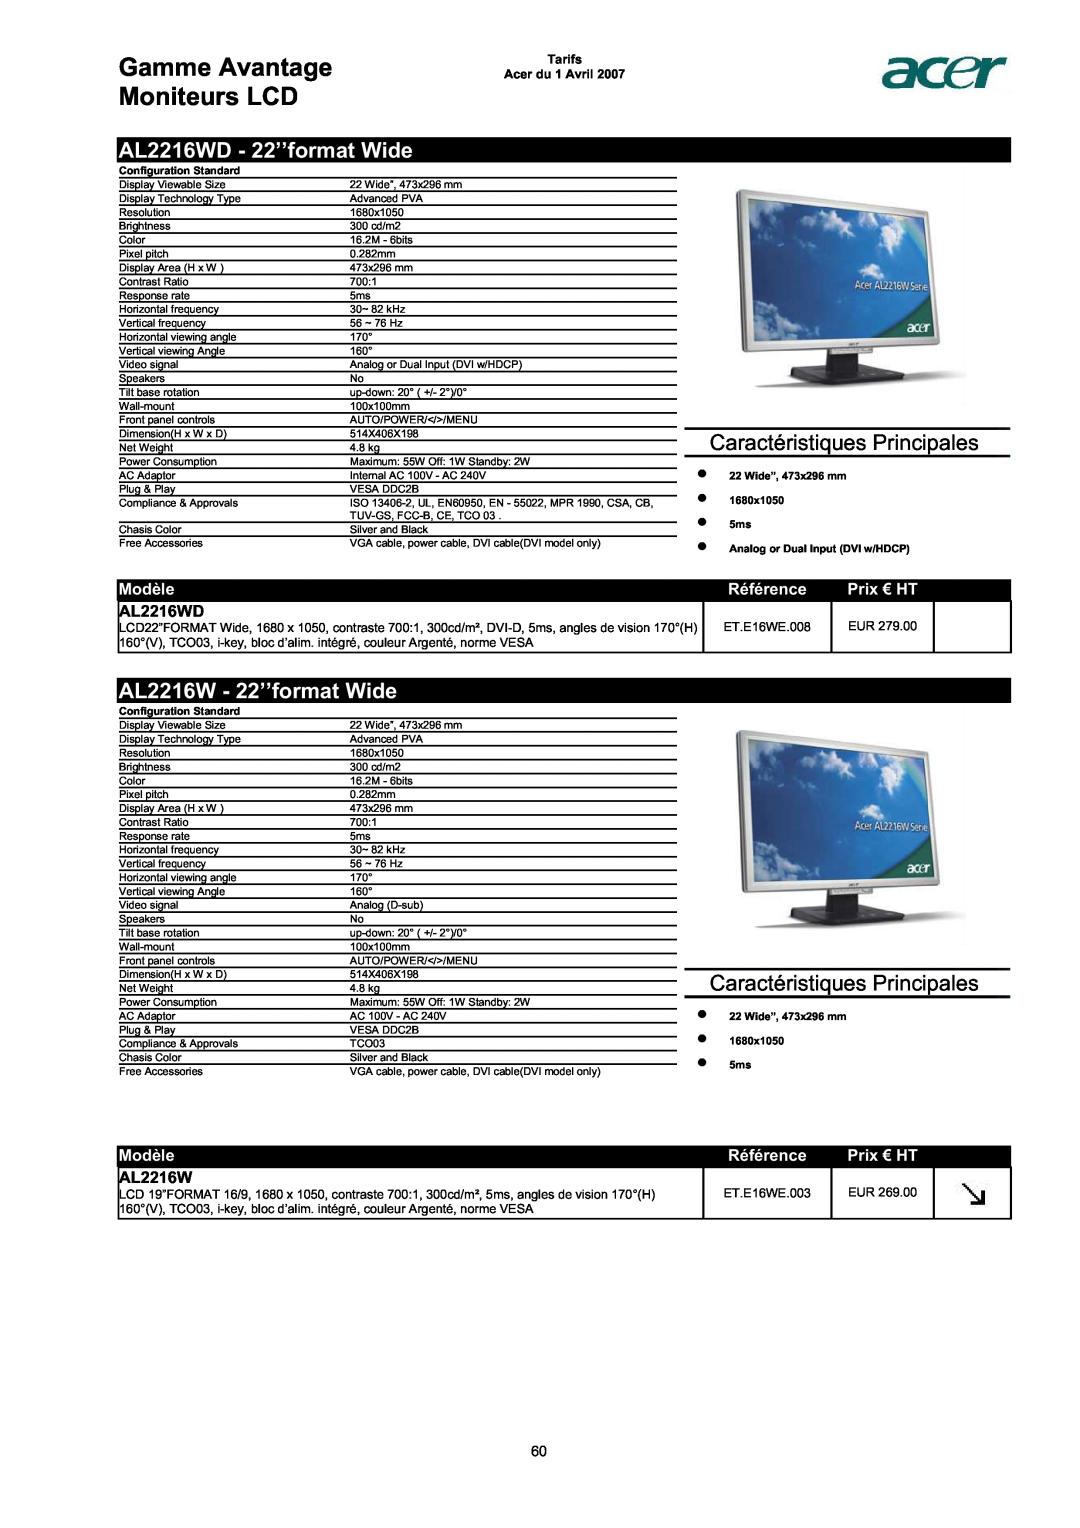 Acer AC713B-17 Gamme Avantage Moniteurs LCD, AL2216WD - 22’’format Wide, AL2216W - 22’’format Wide, Modèle, Référence 